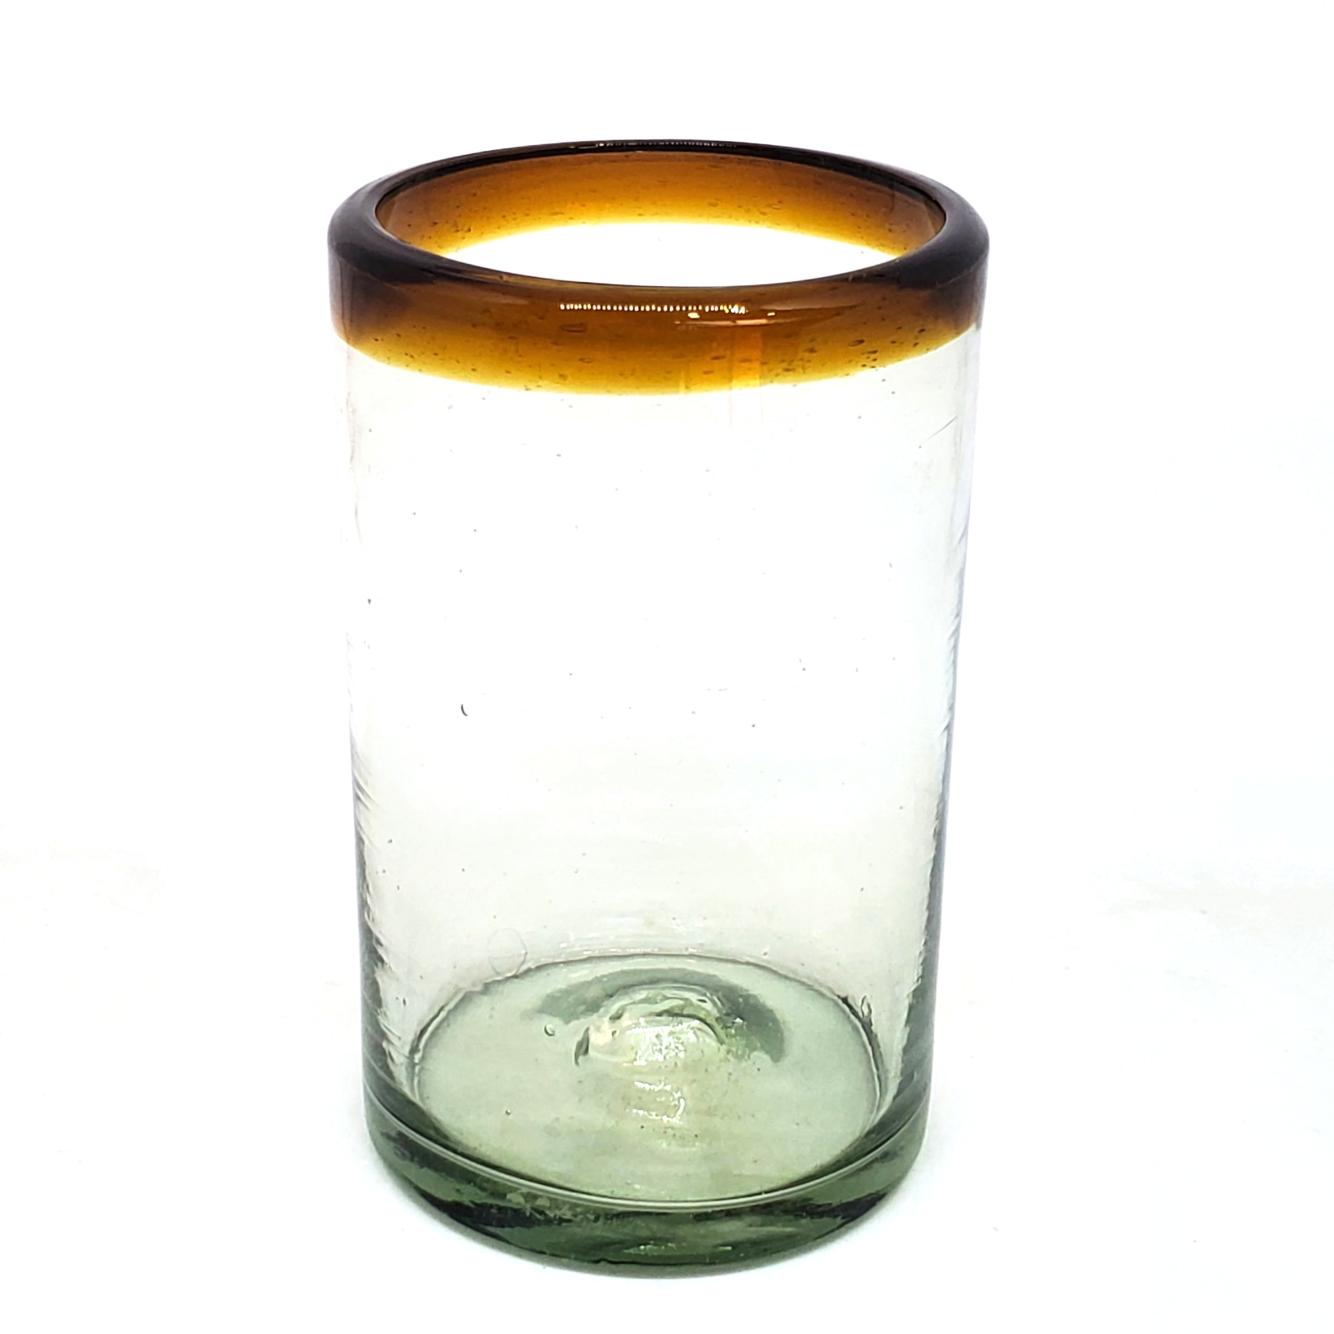 VIDRIO SOPLADO / Juego de 6 vasos grandes con borde color mbar / stos artesanales vasos le darn un toque clsico a su bebida favorita.